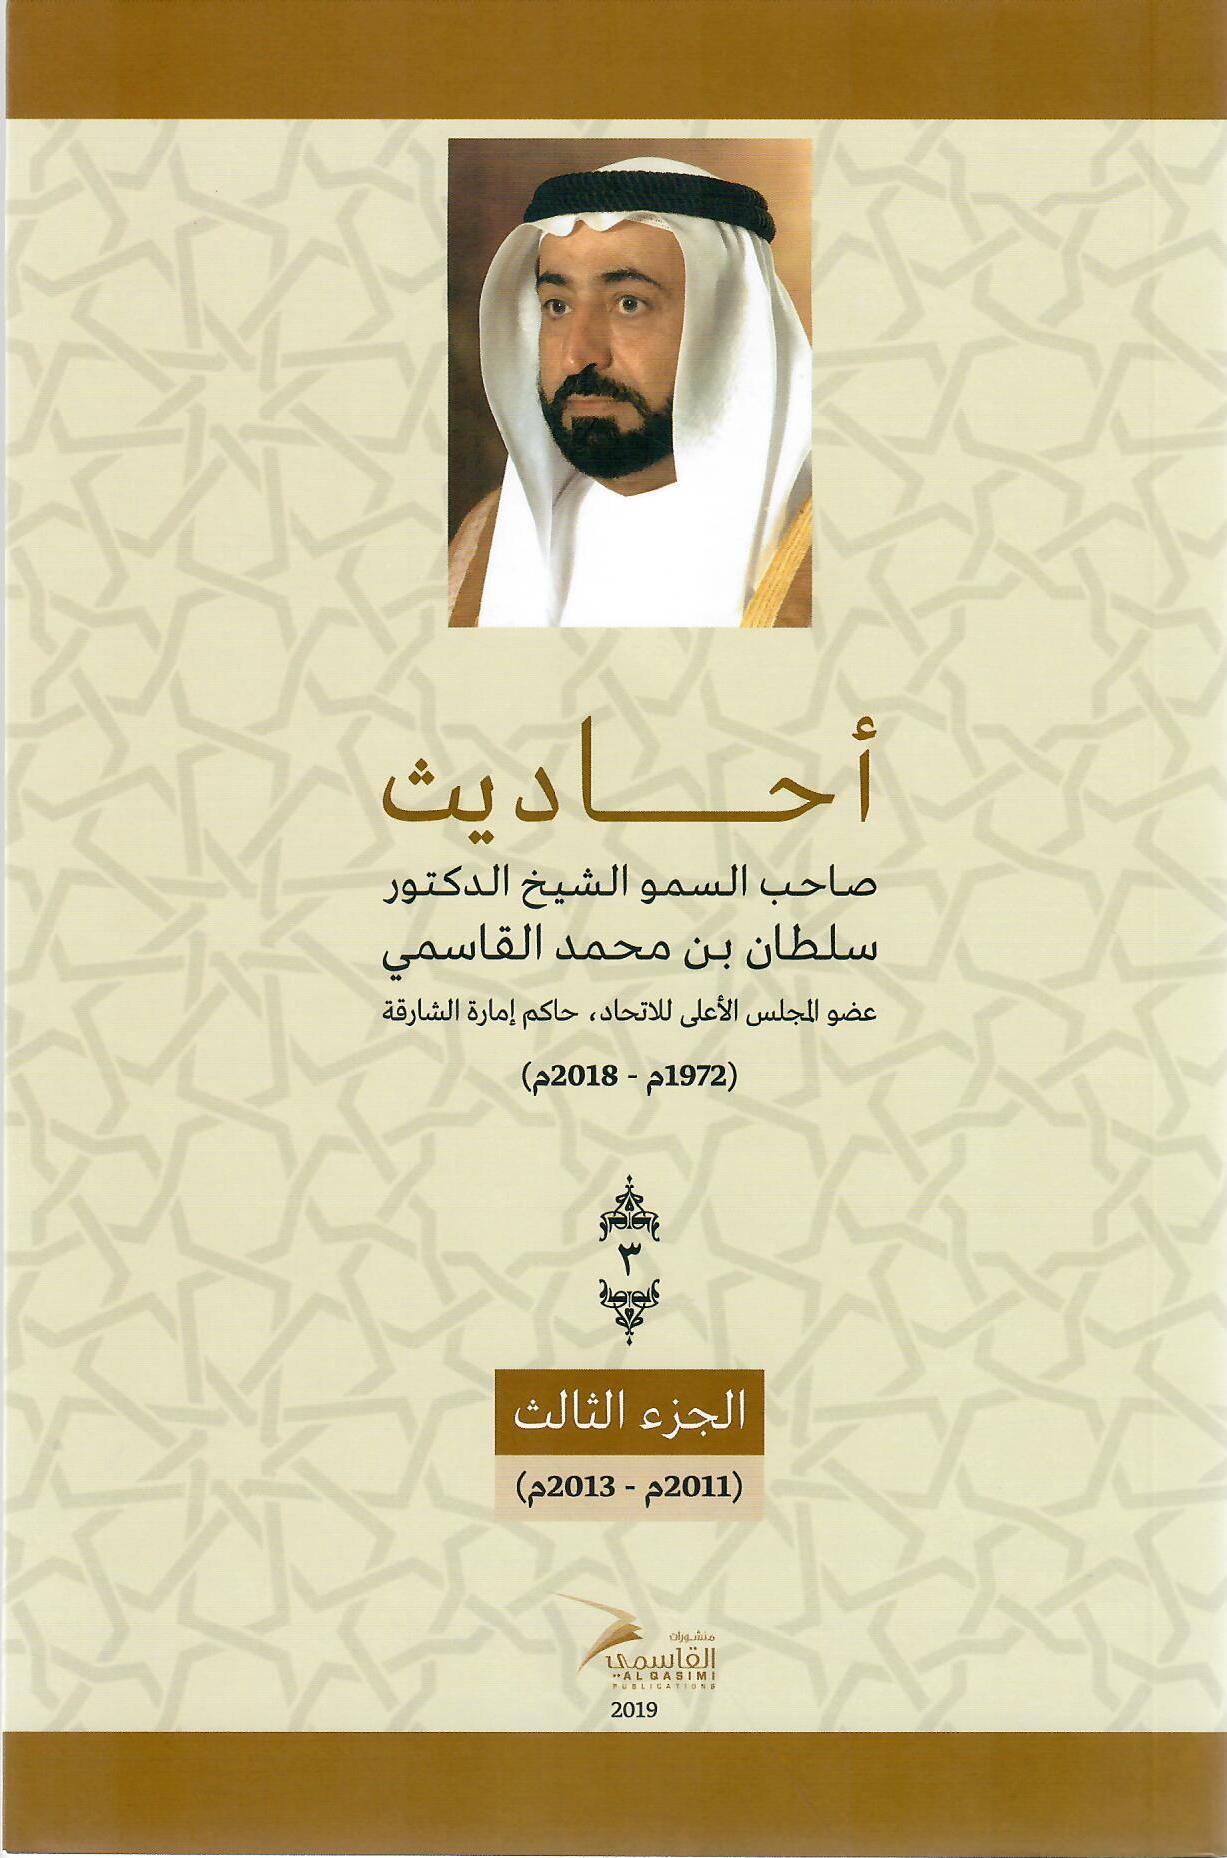 أحاديث صاحب السمو الشيخ الدكتور سلطان بن محمد القاسمي عضو المجلس الأعلى حاكم الشارقة ( 1972م - 2018م) الجزء الثالث